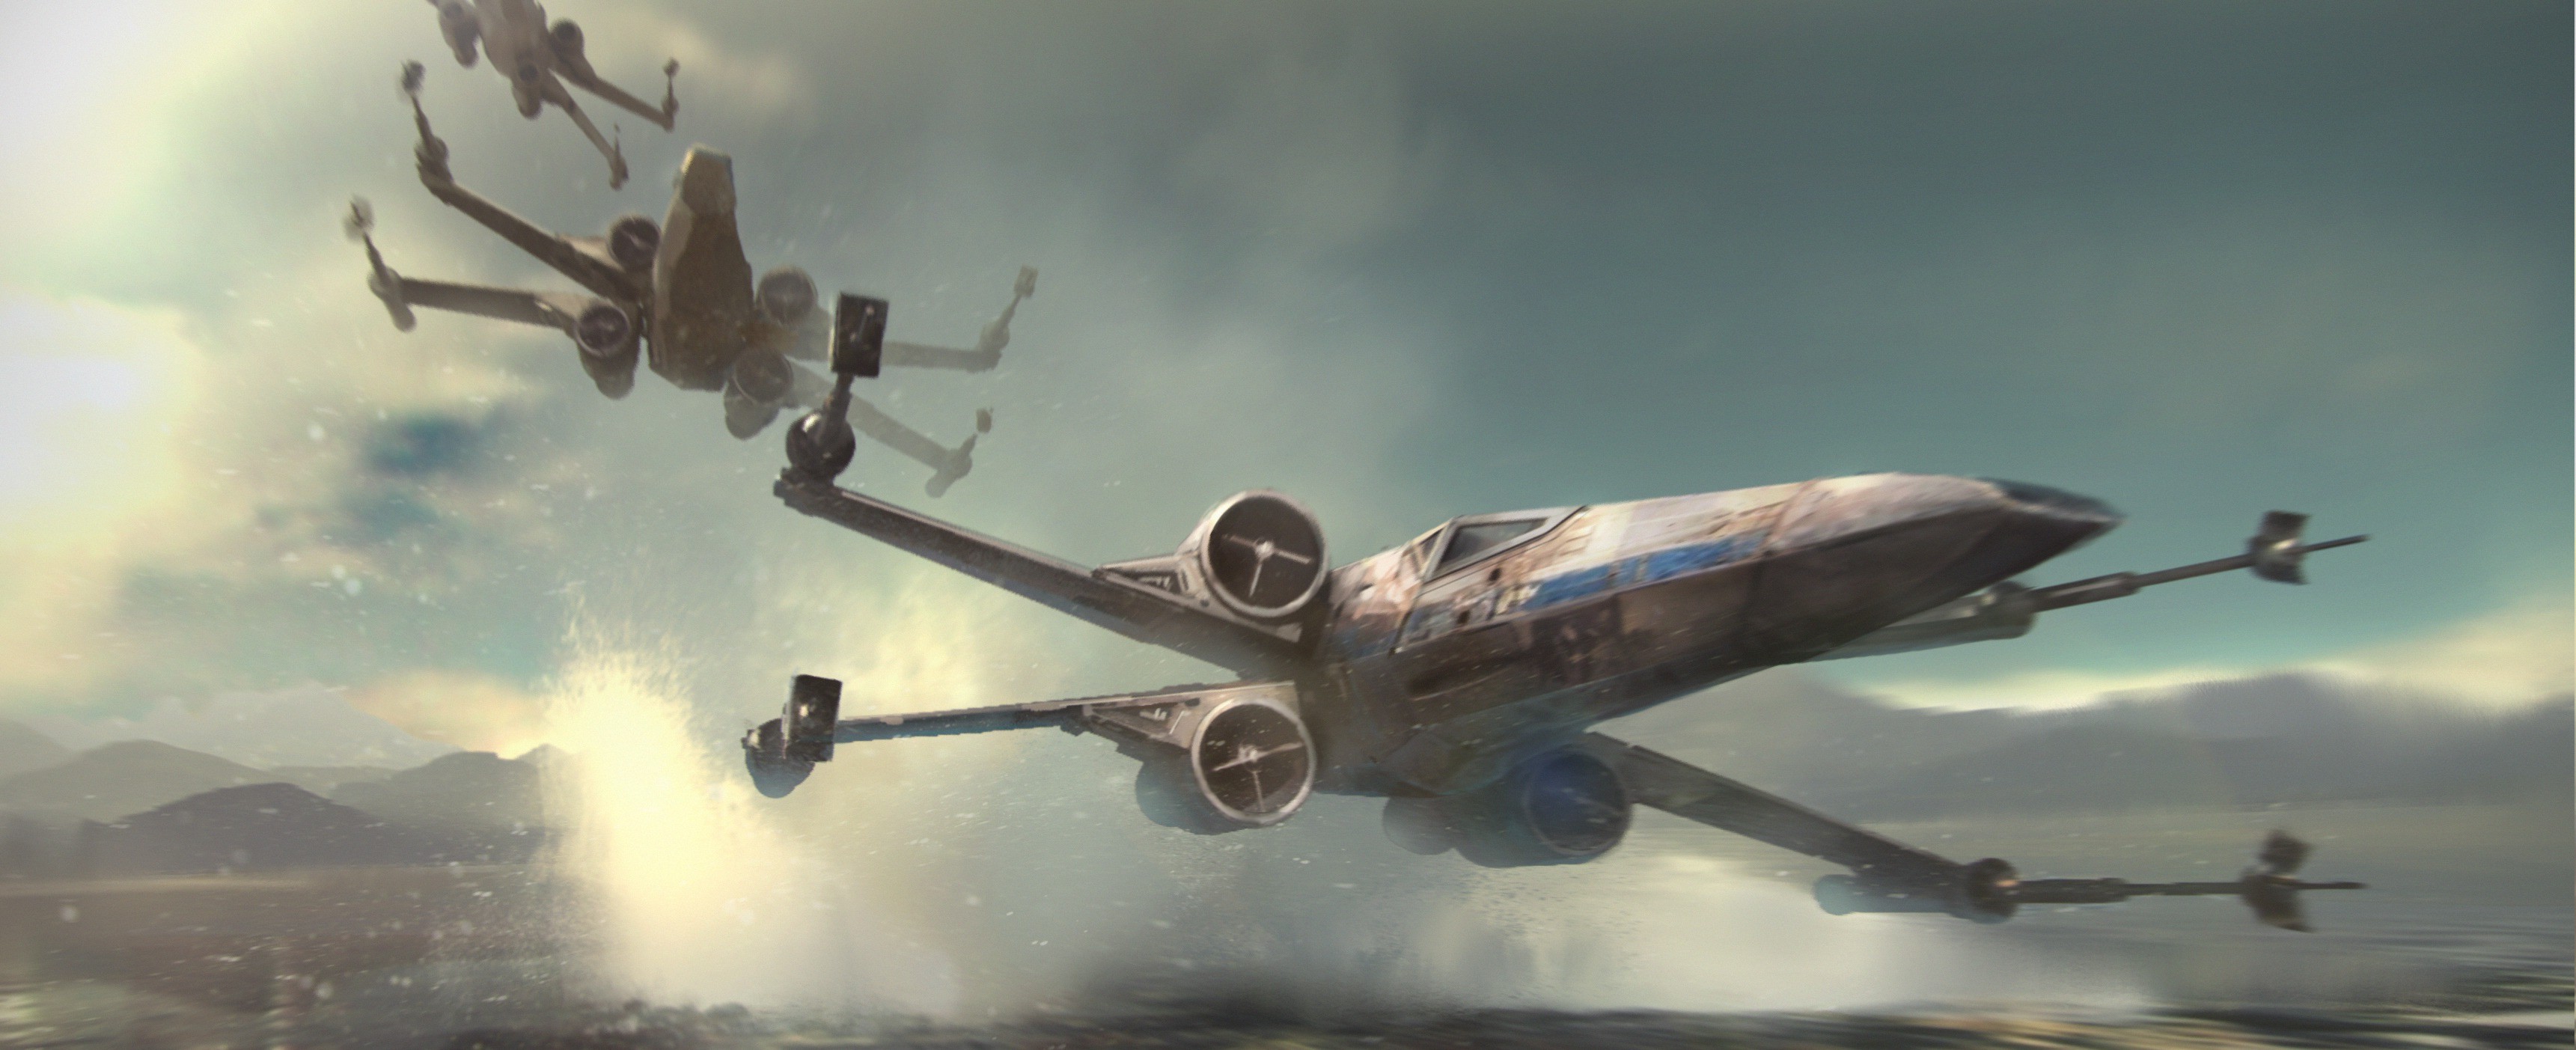 guerre stellari x ala wallpaper,aereo,aereo,veicolo,aviazione,elica